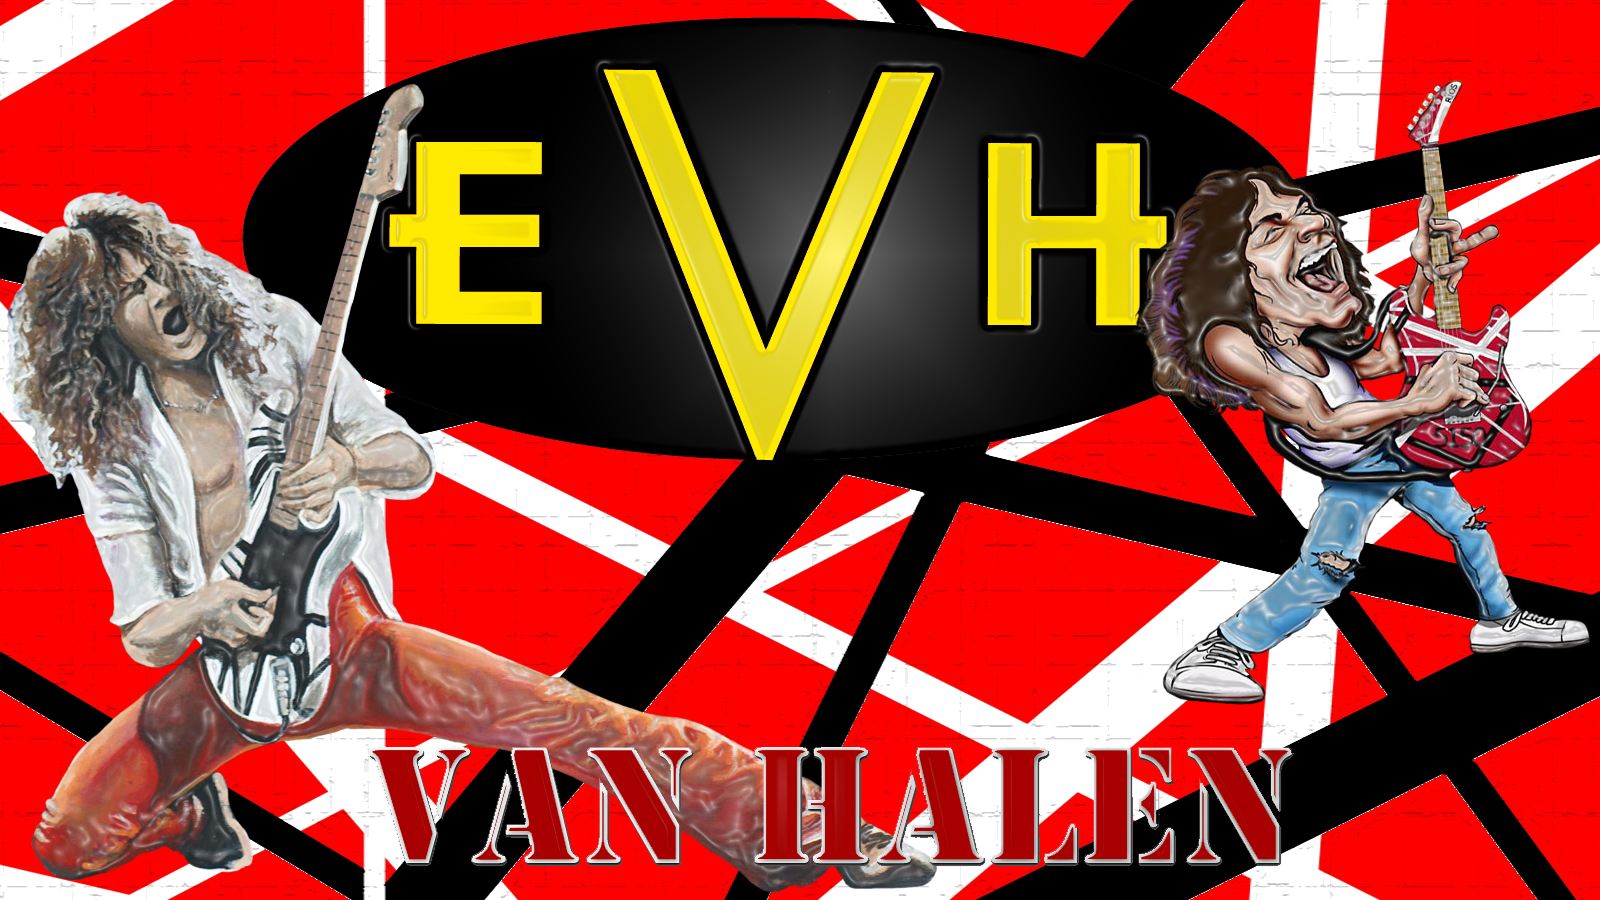 Related Pictures Van Halen Background Desktop Wallpaper